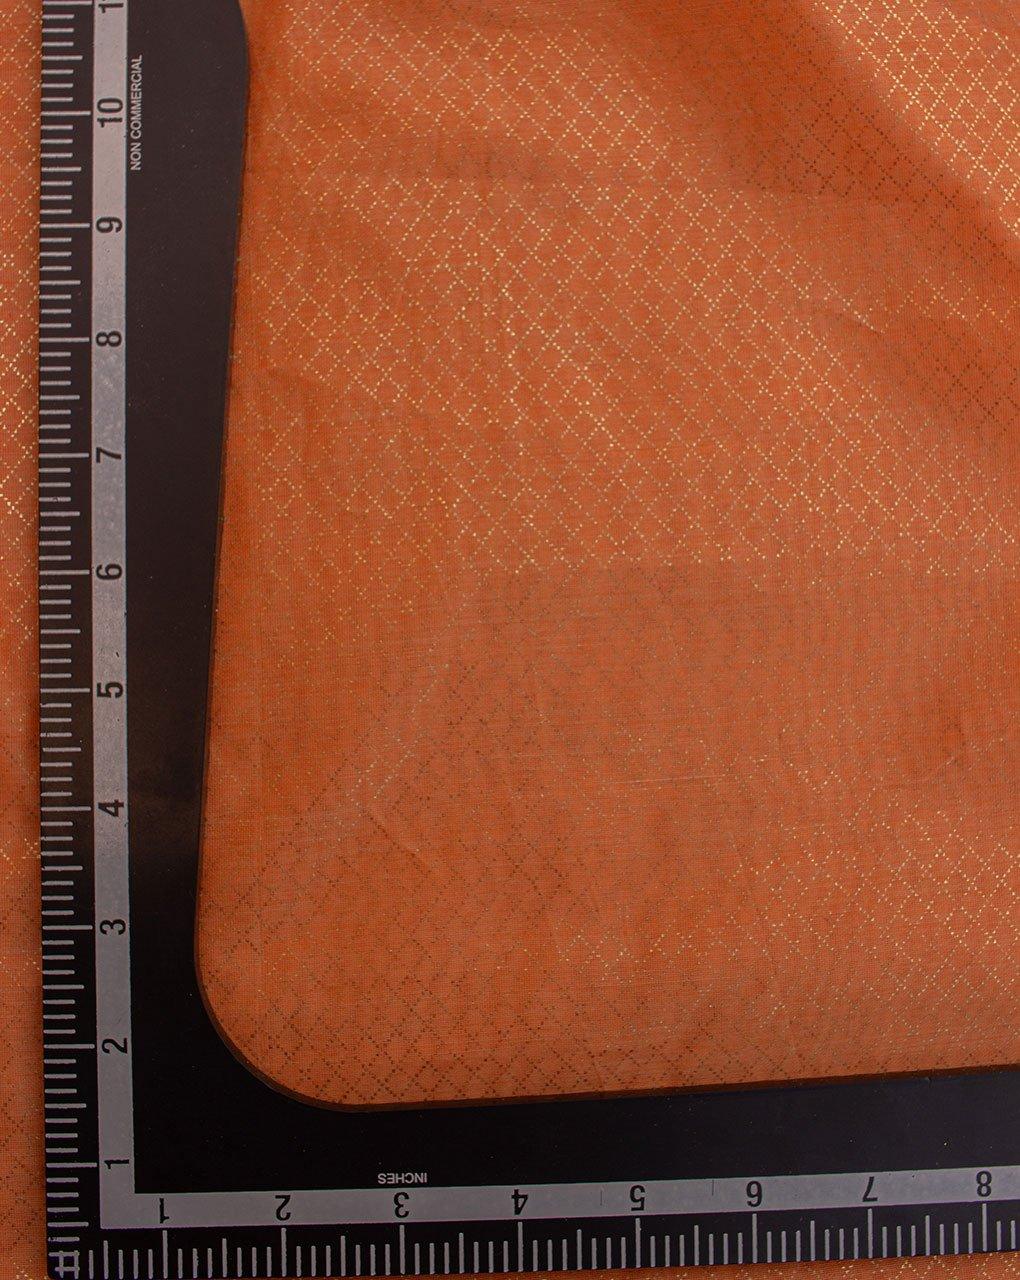 ( Pre-Cut 1.5 MTR ) Orange Gold Trilles Screen Print Chanderi Fabric - Fabriclore.com